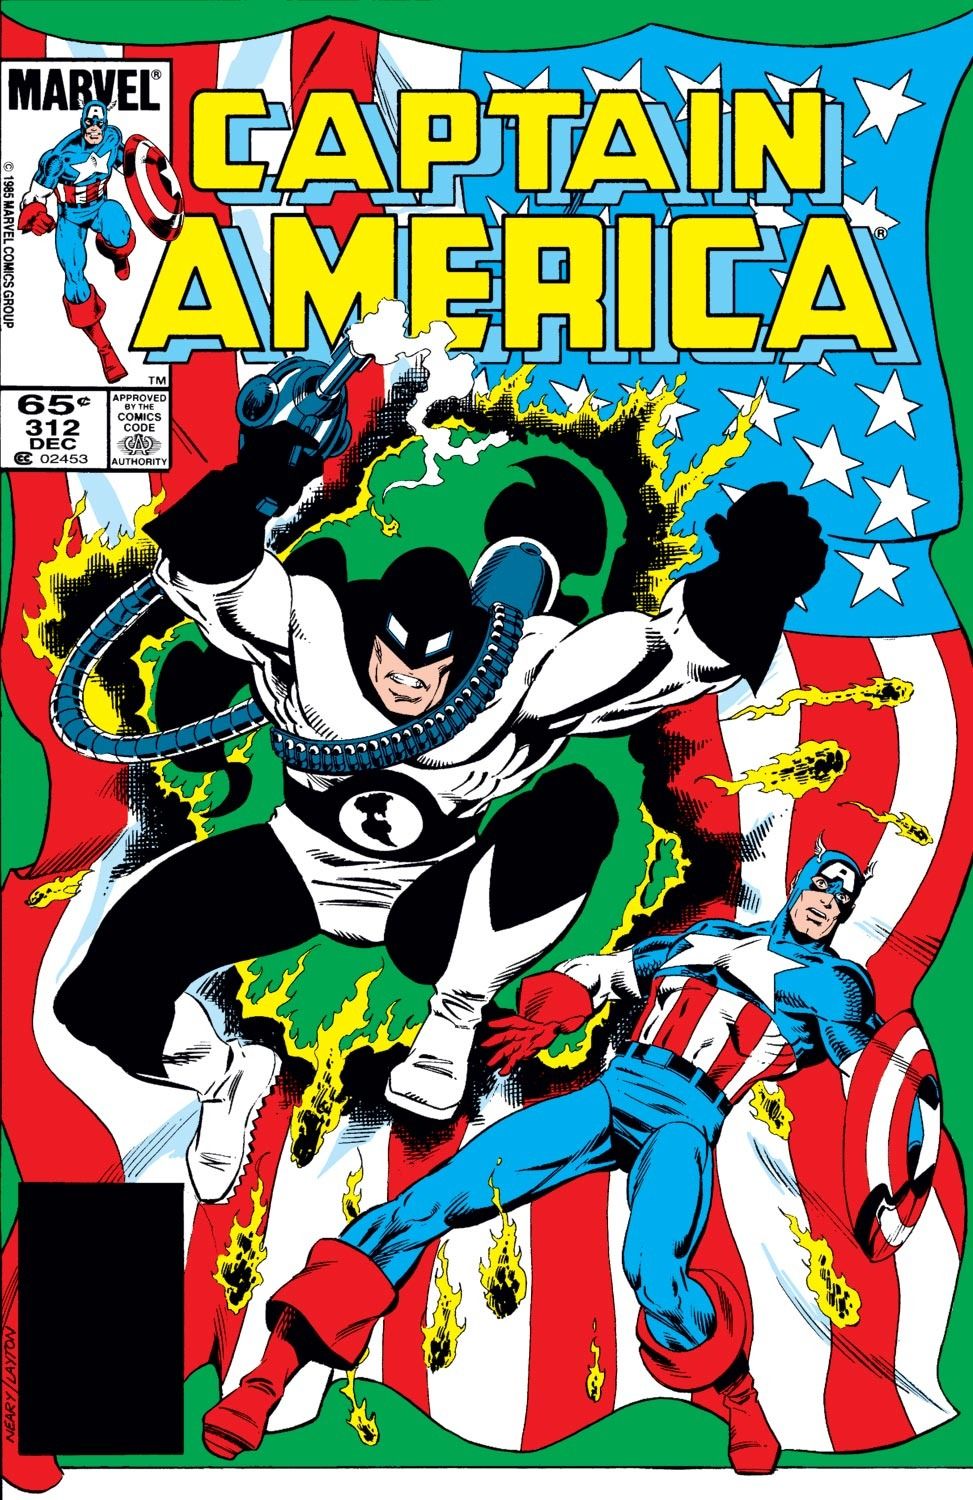 A capa do Capitão América #312